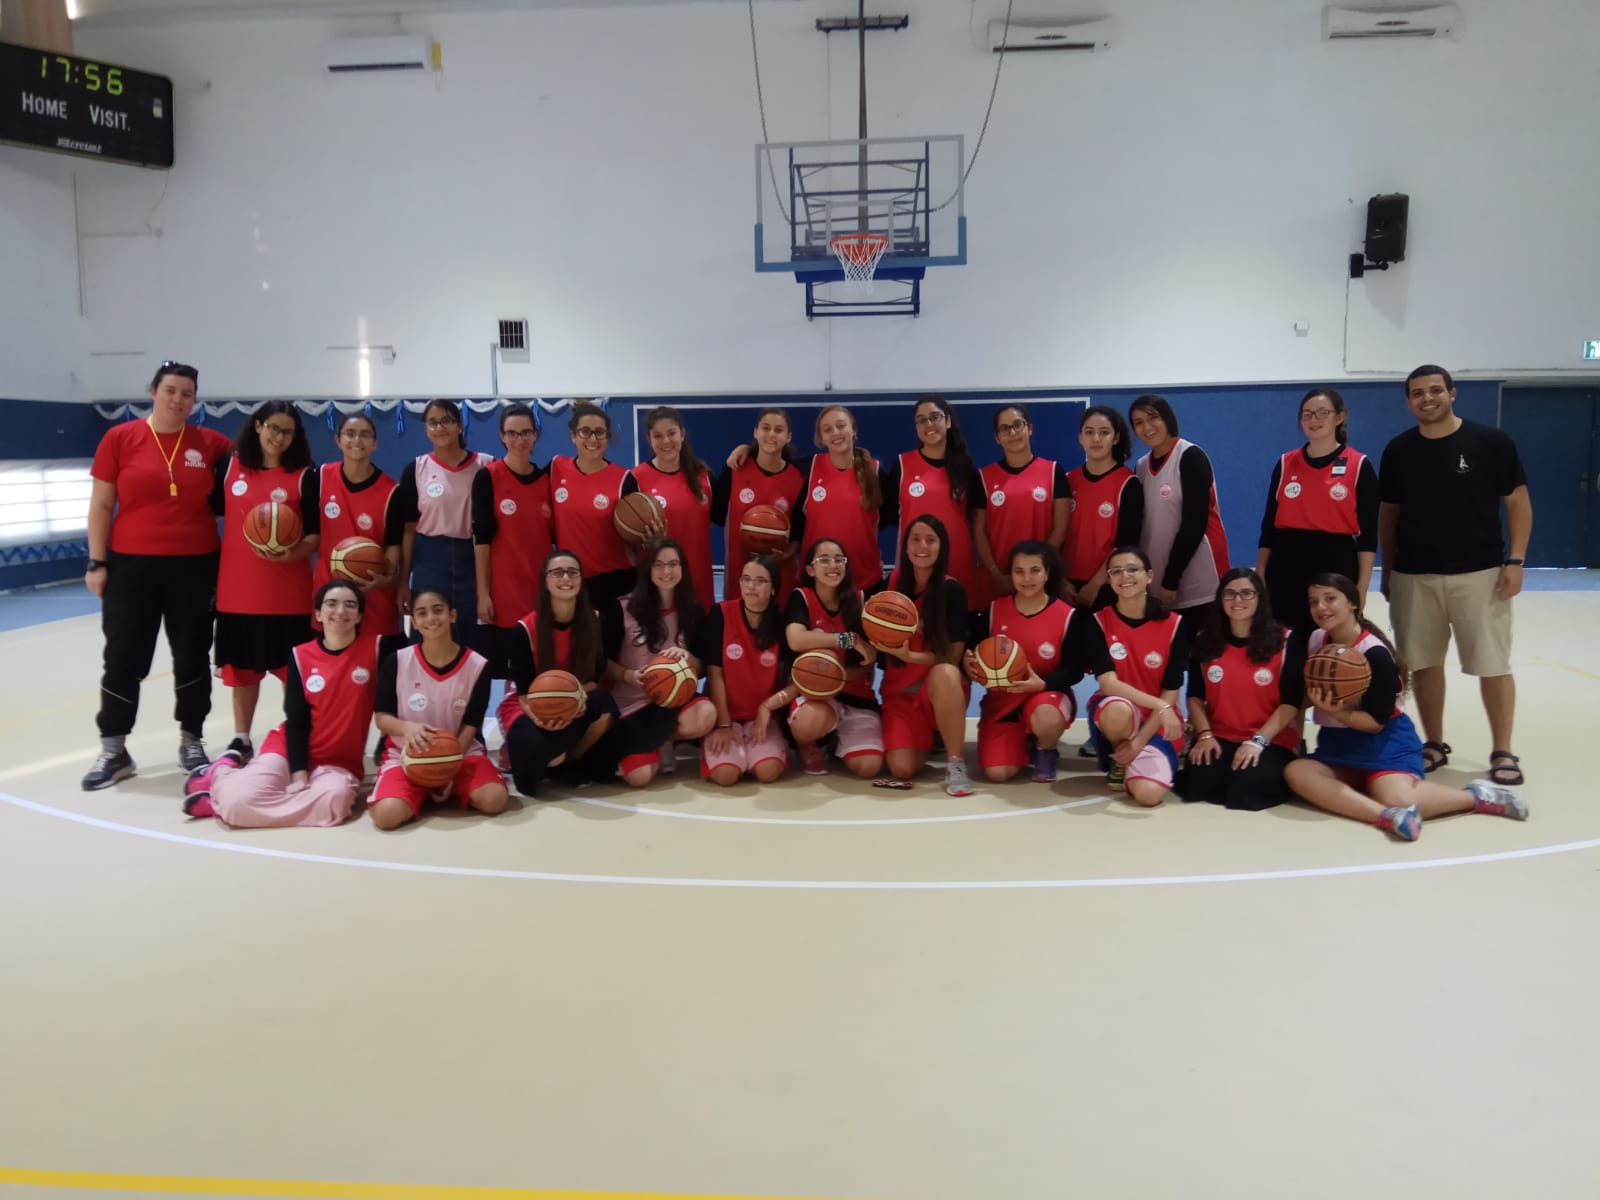 תחילתה של ליגה חדשה בכדורסל – לנערות דתיות